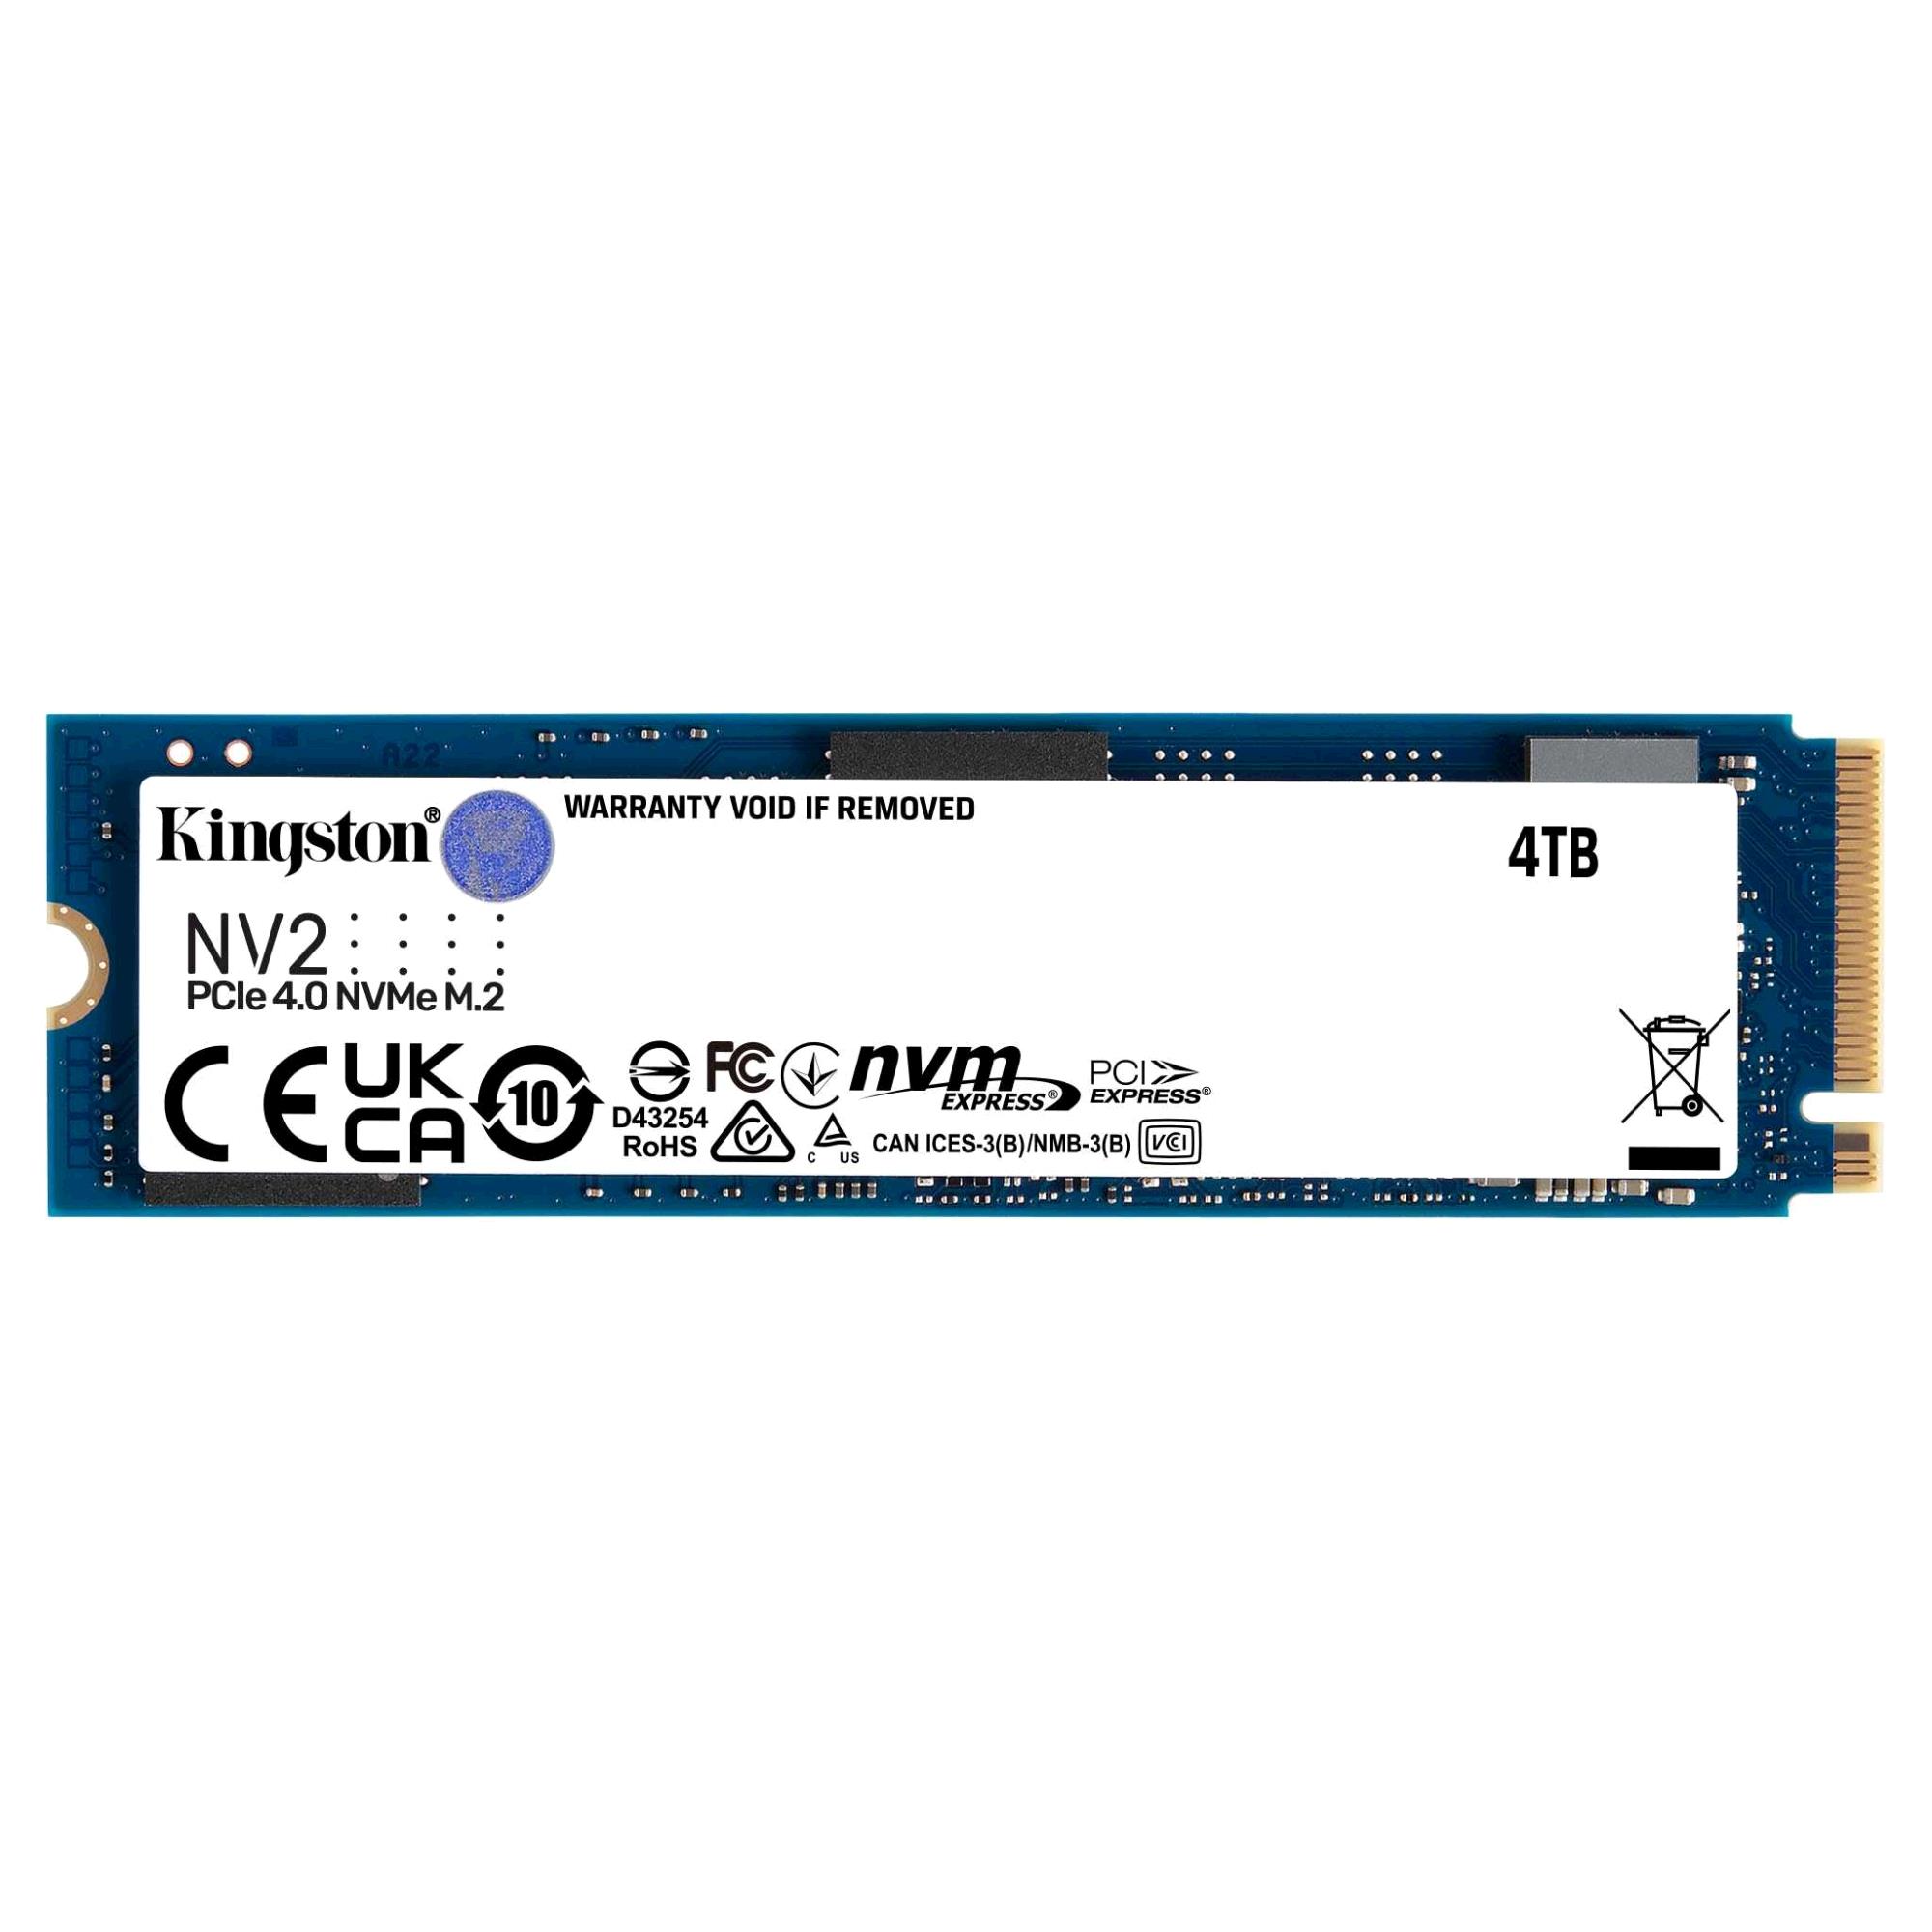 Kingston NV2 4TB PCIe 4.0 NVMe SSD